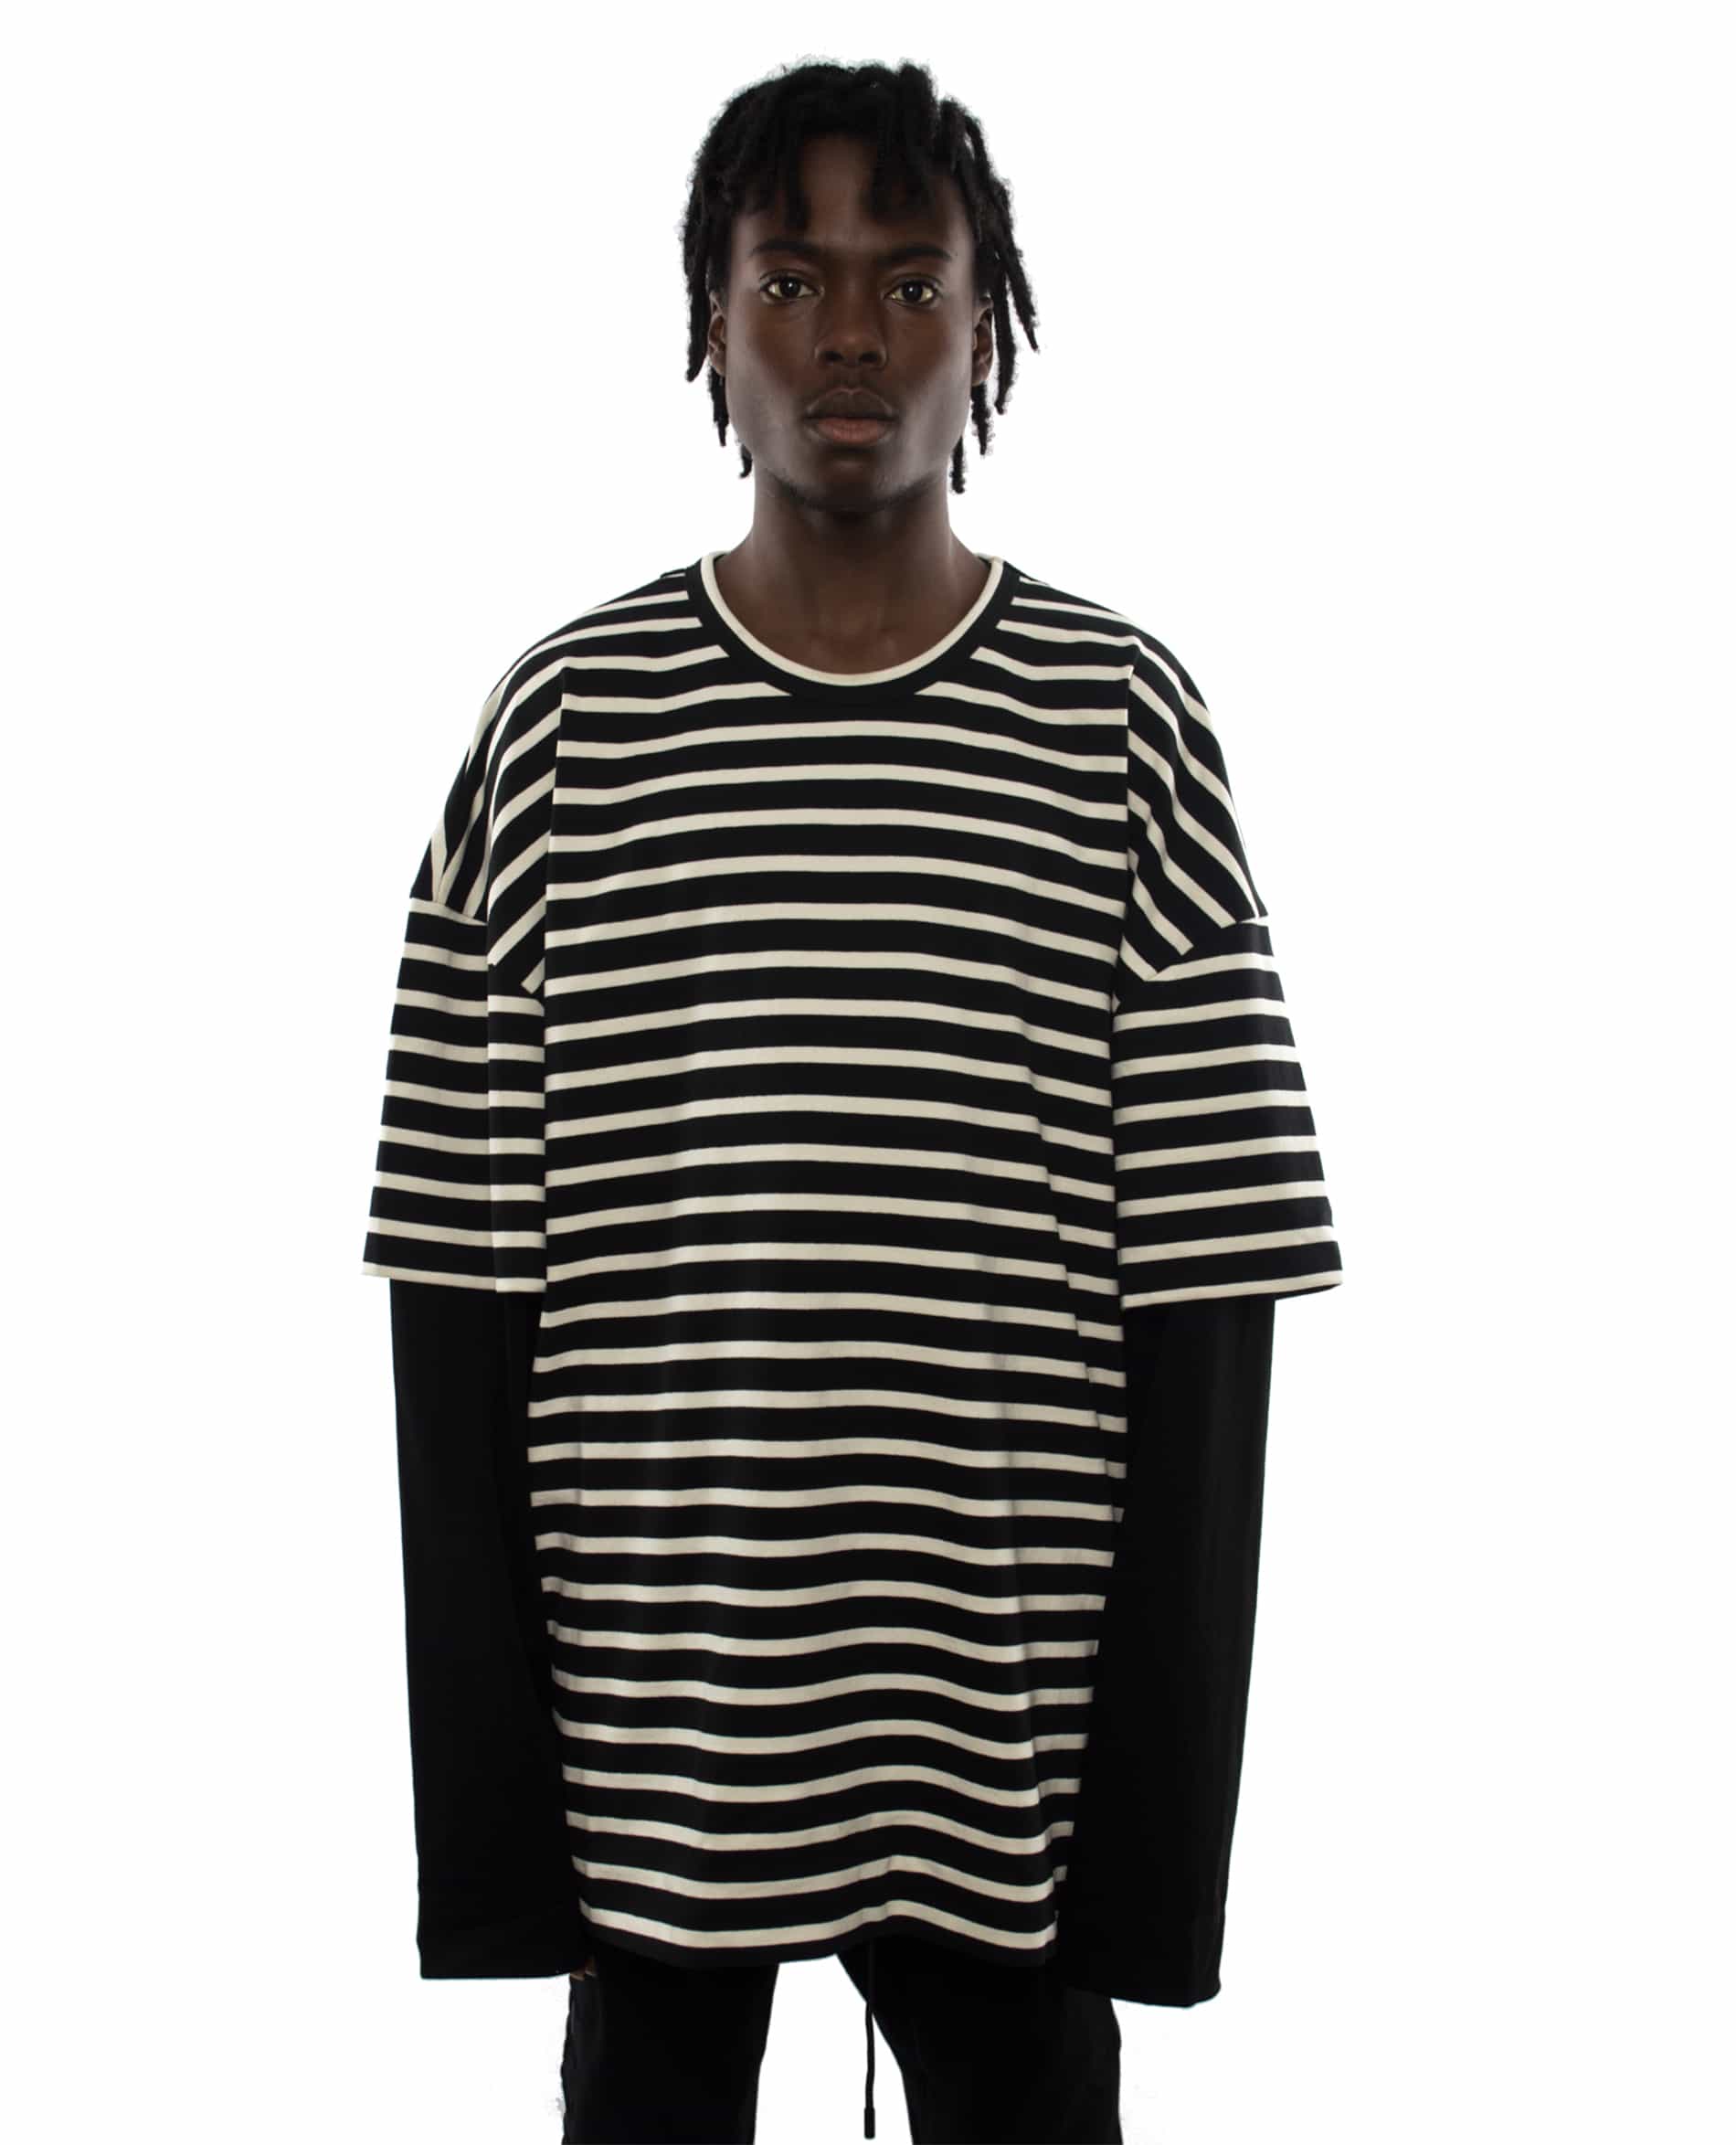 Archive JUUN.J Subt!e – T-Shirt striped